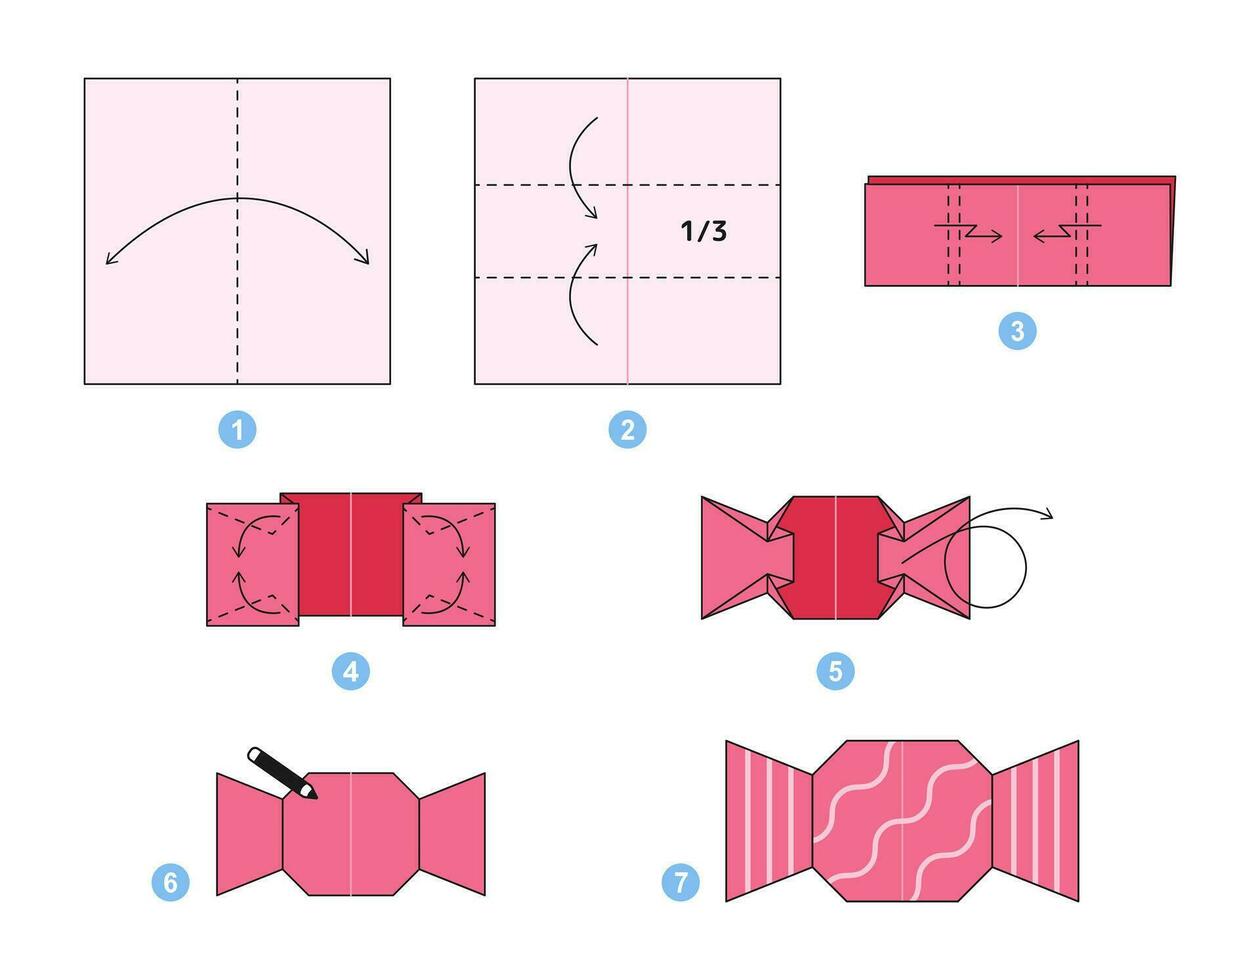 caramella origami schema lezione in movimento modello. origami per bambini. passo di passo Come per rendere un' carino origami caramella. vettore illustrazione.